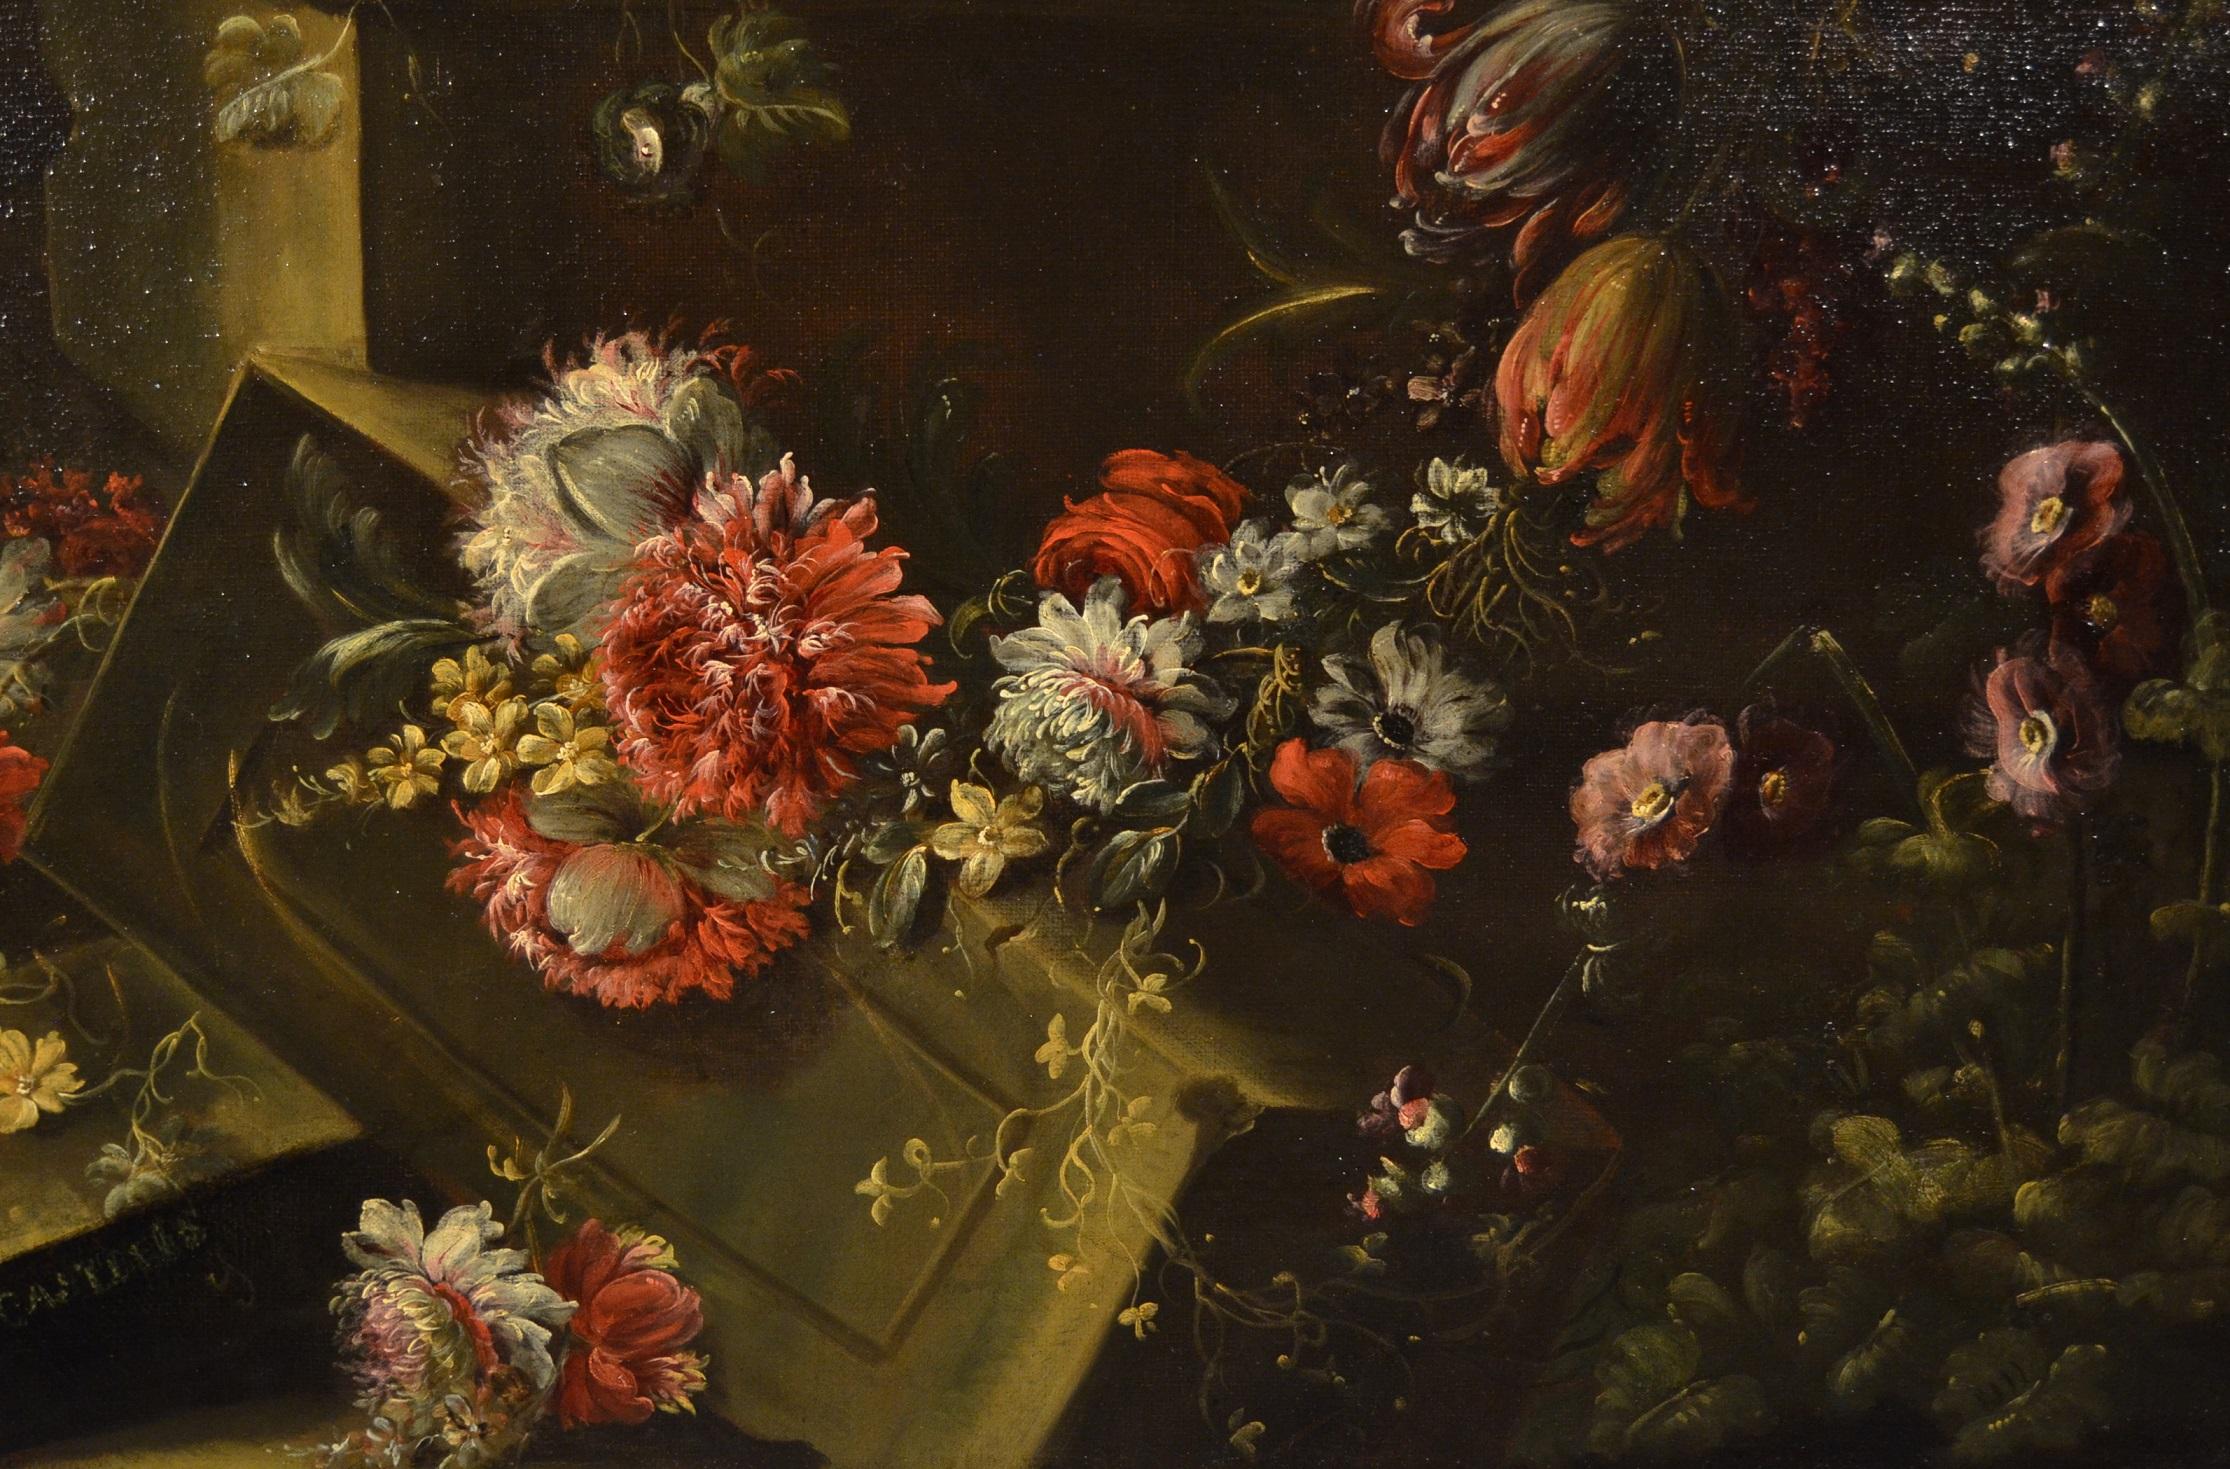 Pieter Casteels III 'Signed' Floral Still Life Old master Paint 18th Century Art - Black Still-Life Painting by Pieter Casteels III (Antwerp 1684 - 1749 Richmond)